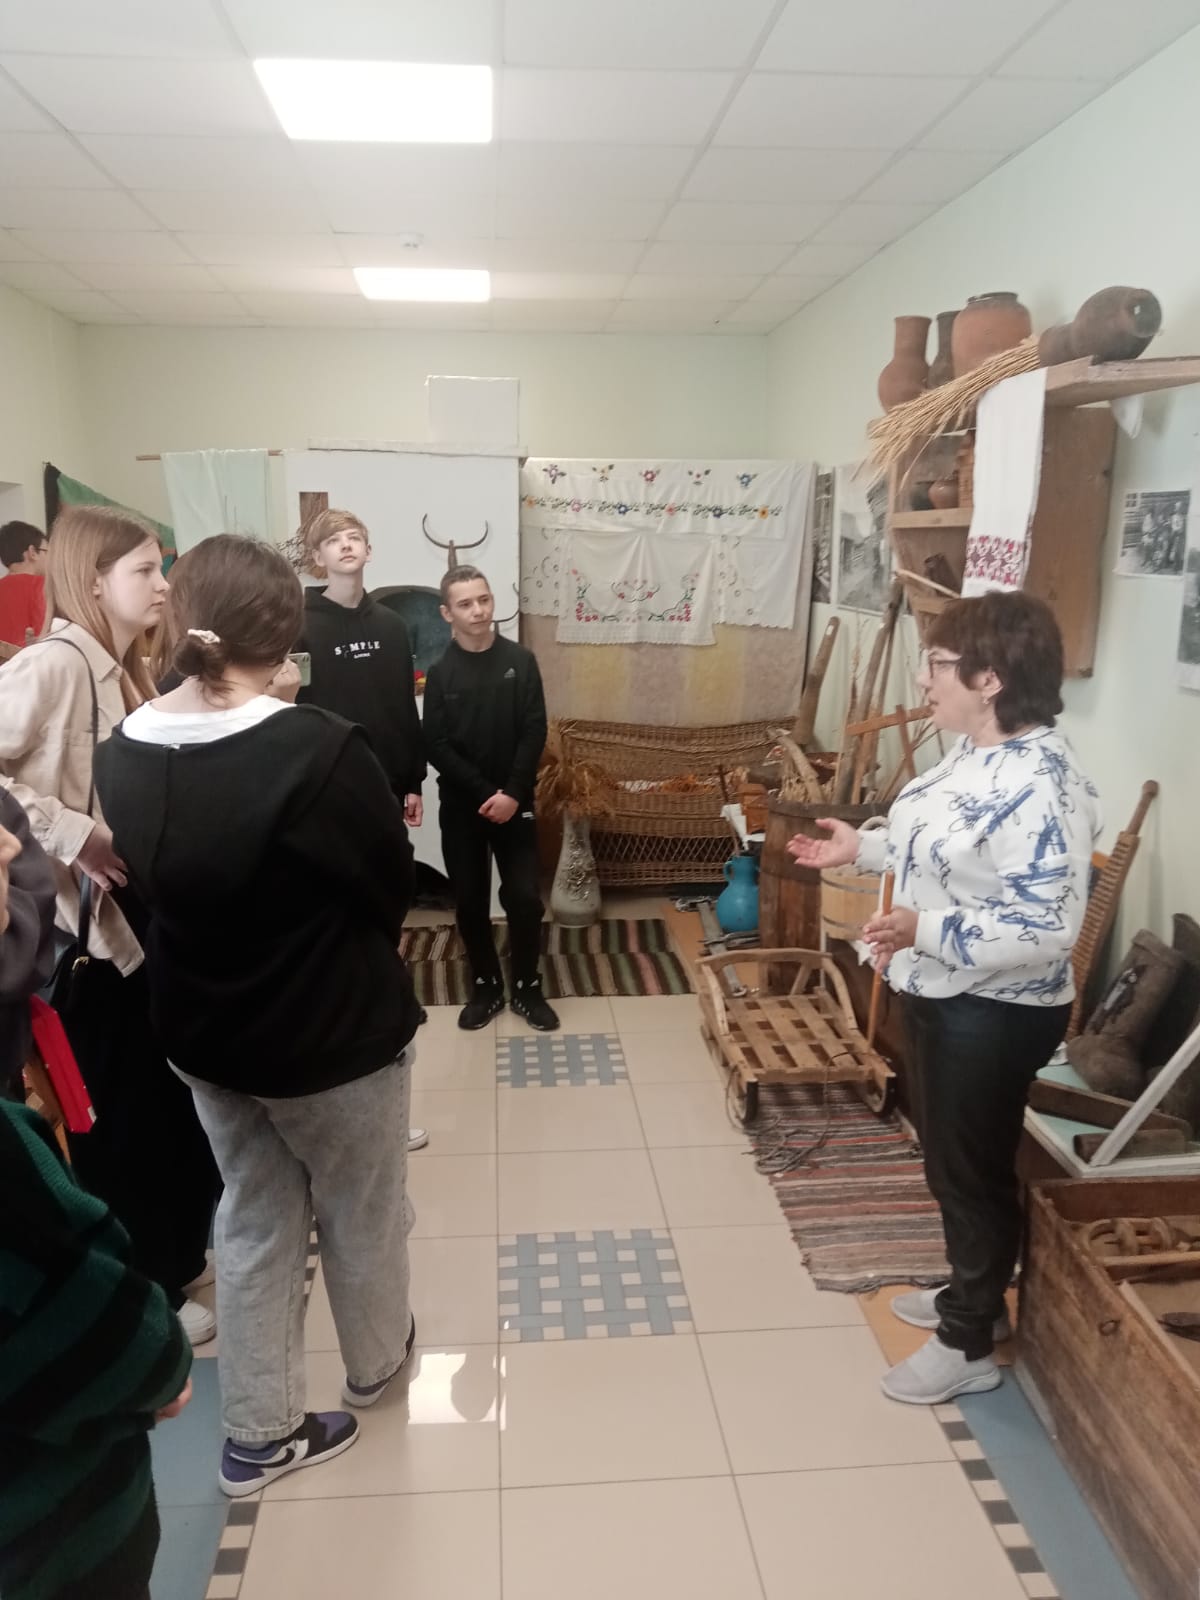 Посещение Историко – краеведческого музея Бондарского округа#musolymp68.